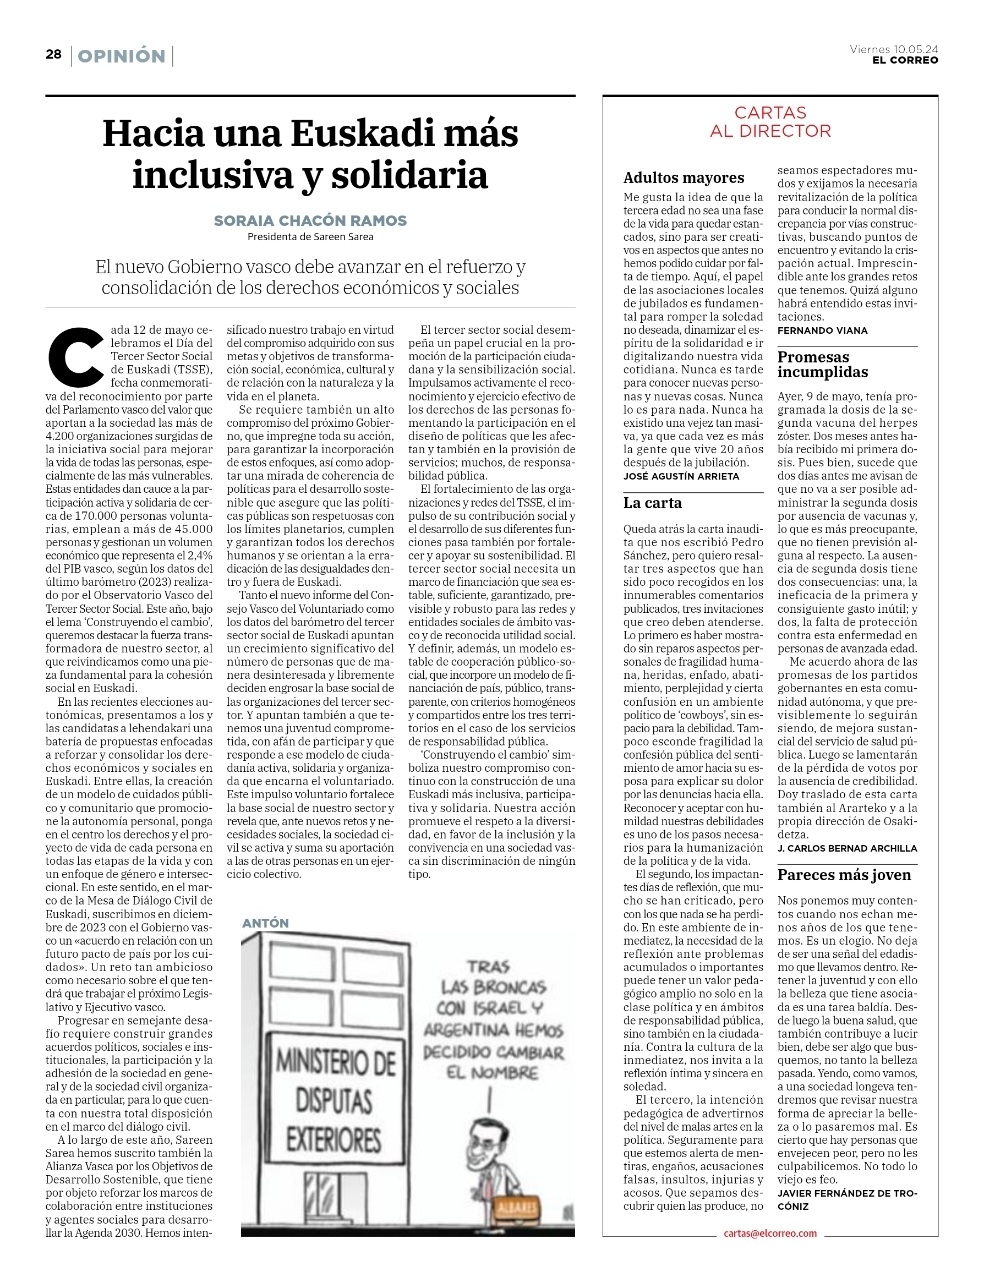 Artículo de opinión: Construyendo el cambio hacia una Euskadi más inclusiva y solidaria